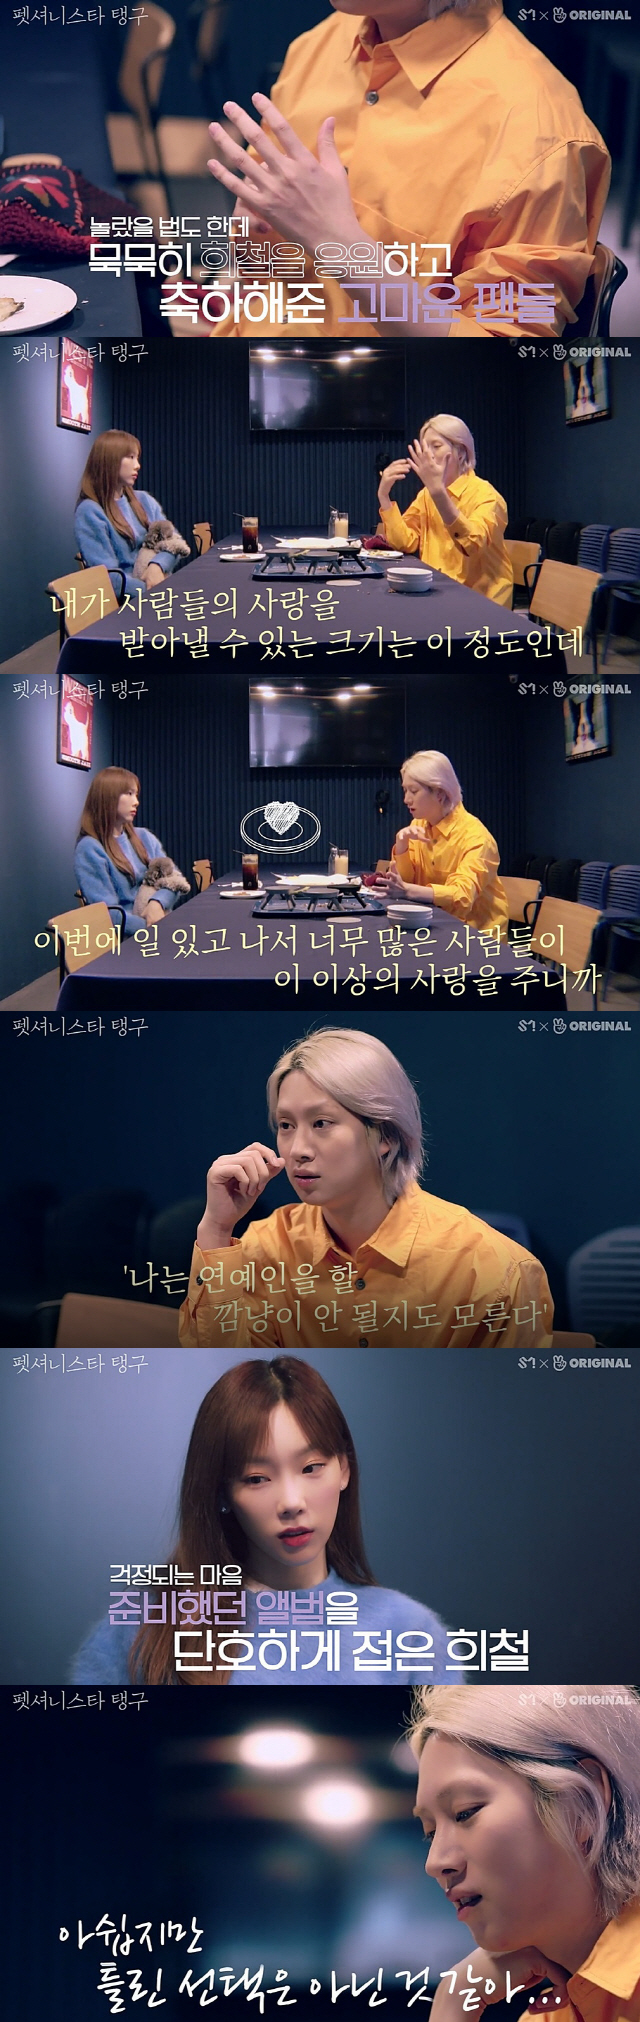 김희철, ♥모모와 공개 열애 심경…"응원이 죄책감으로 느껴지기도"